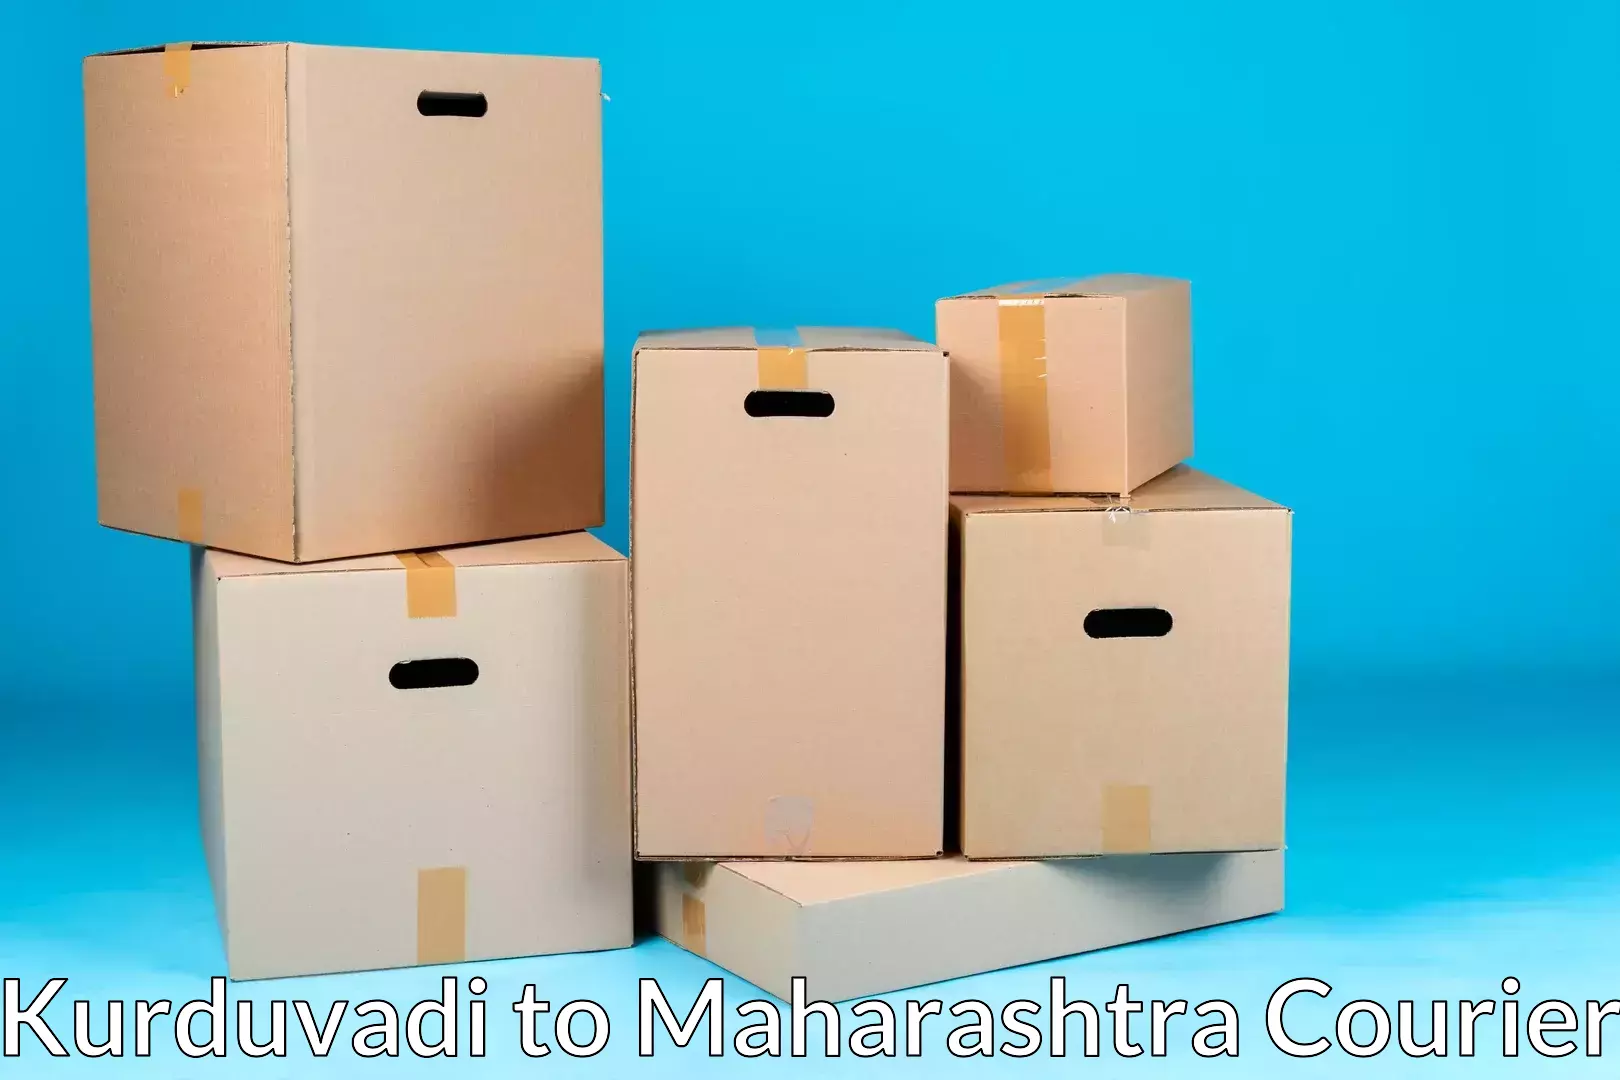 Moving and packing experts Kurduvadi to Maharashtra